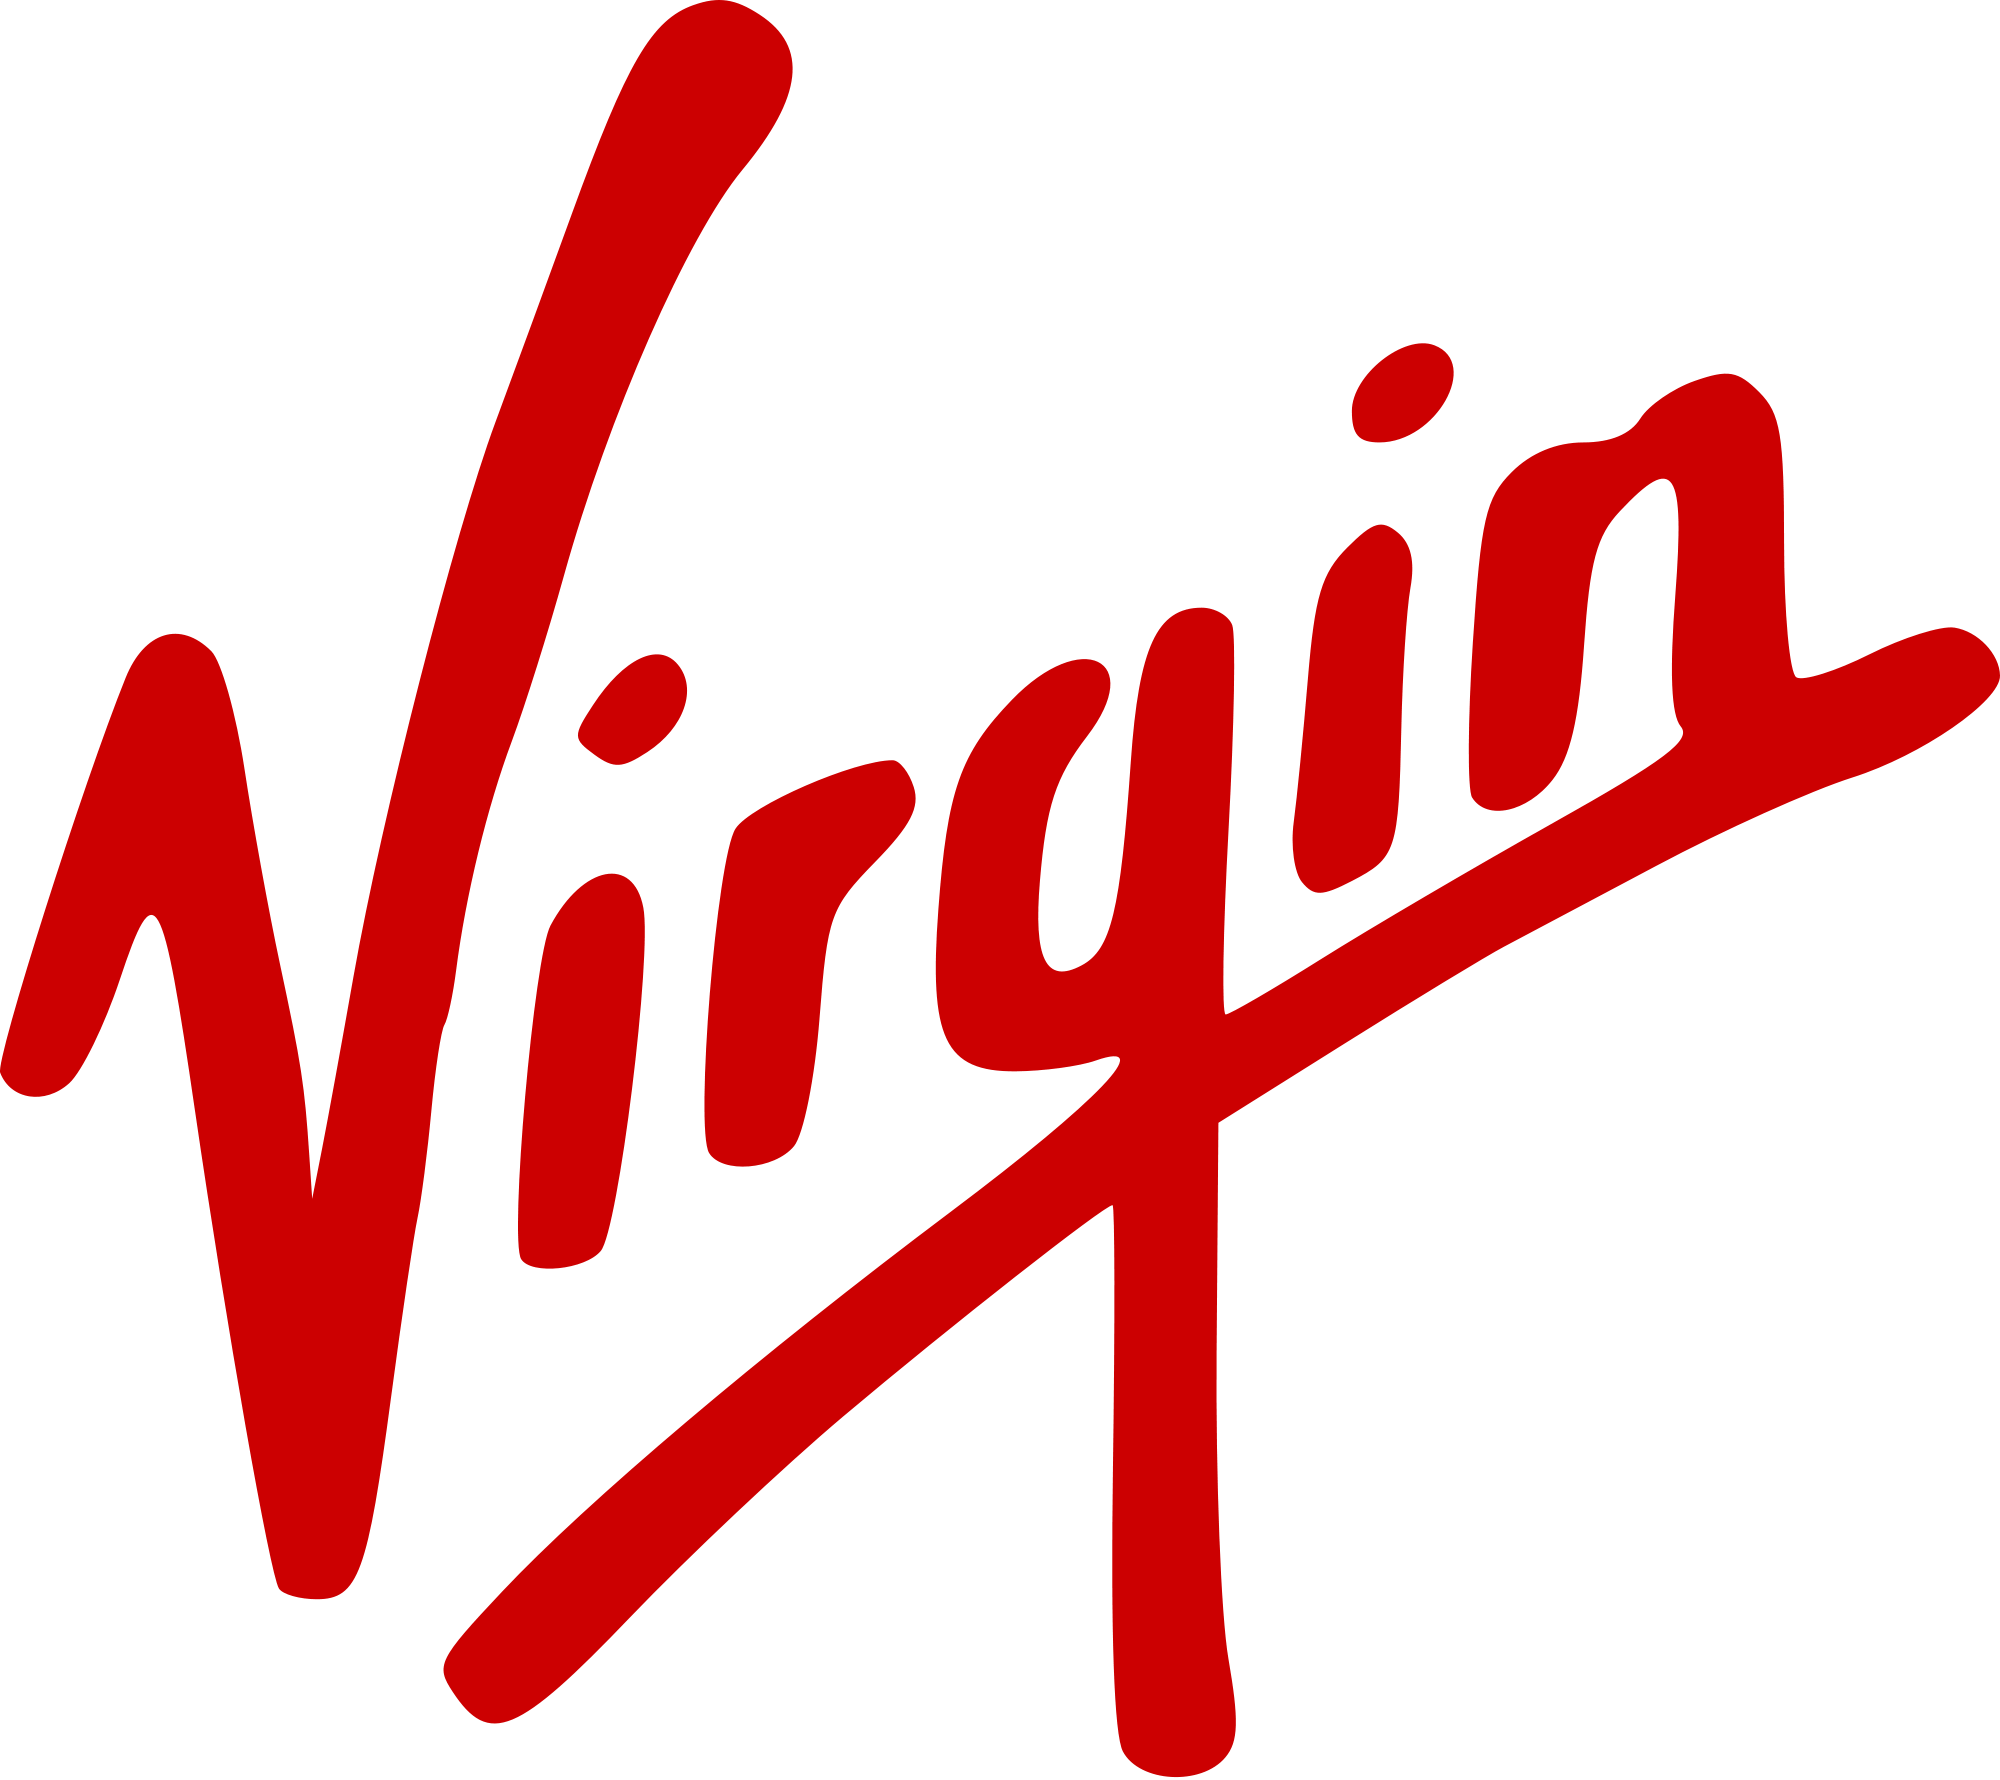 Virgin group logo, logotype